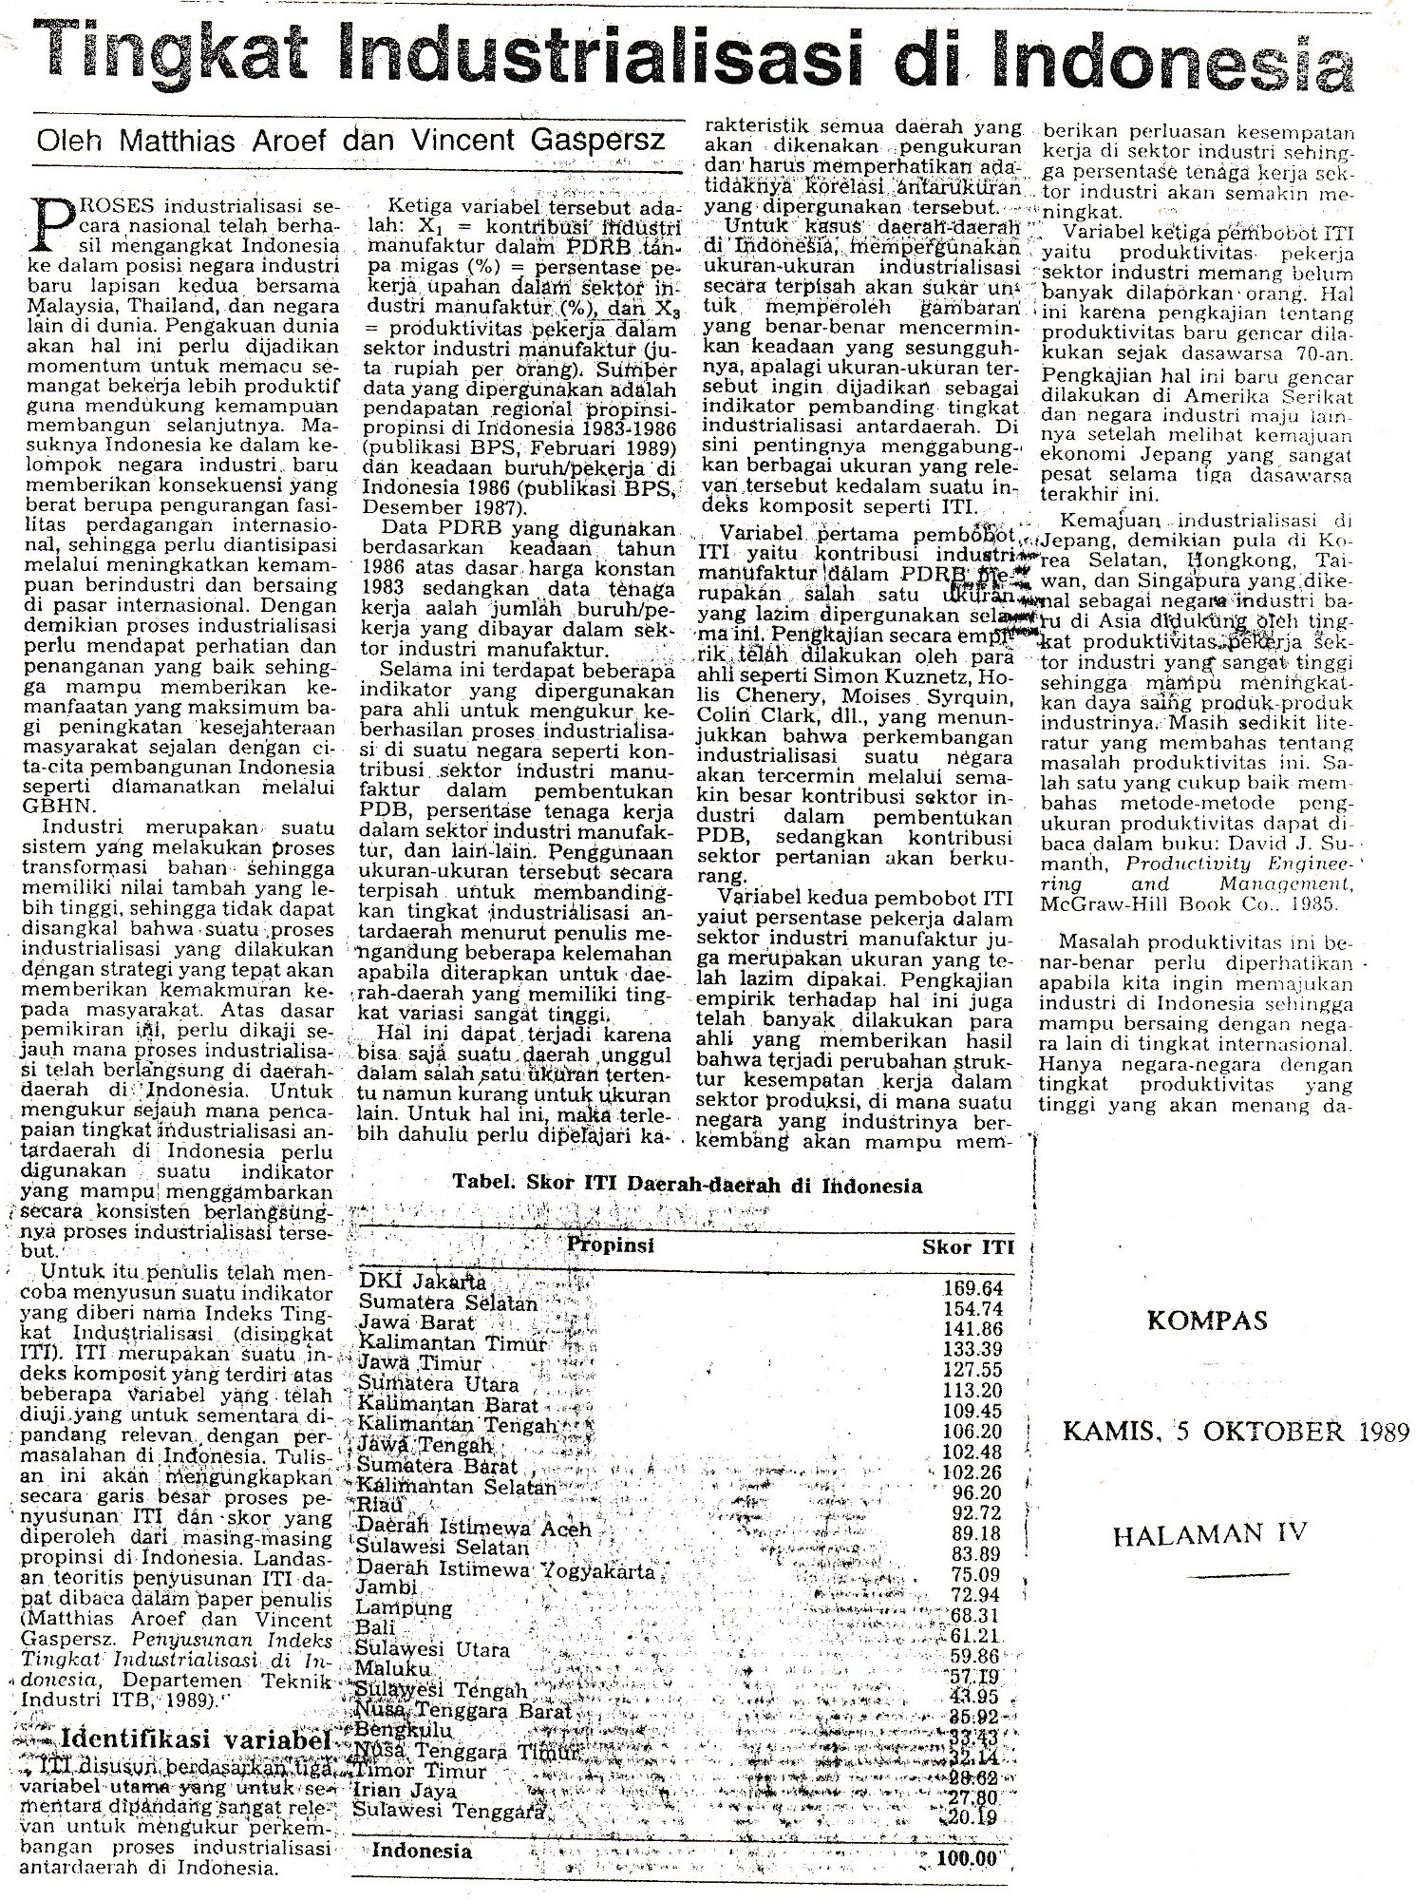 1989 Kompas Tingkat Industrialisasi di Indonesia MA VG 1